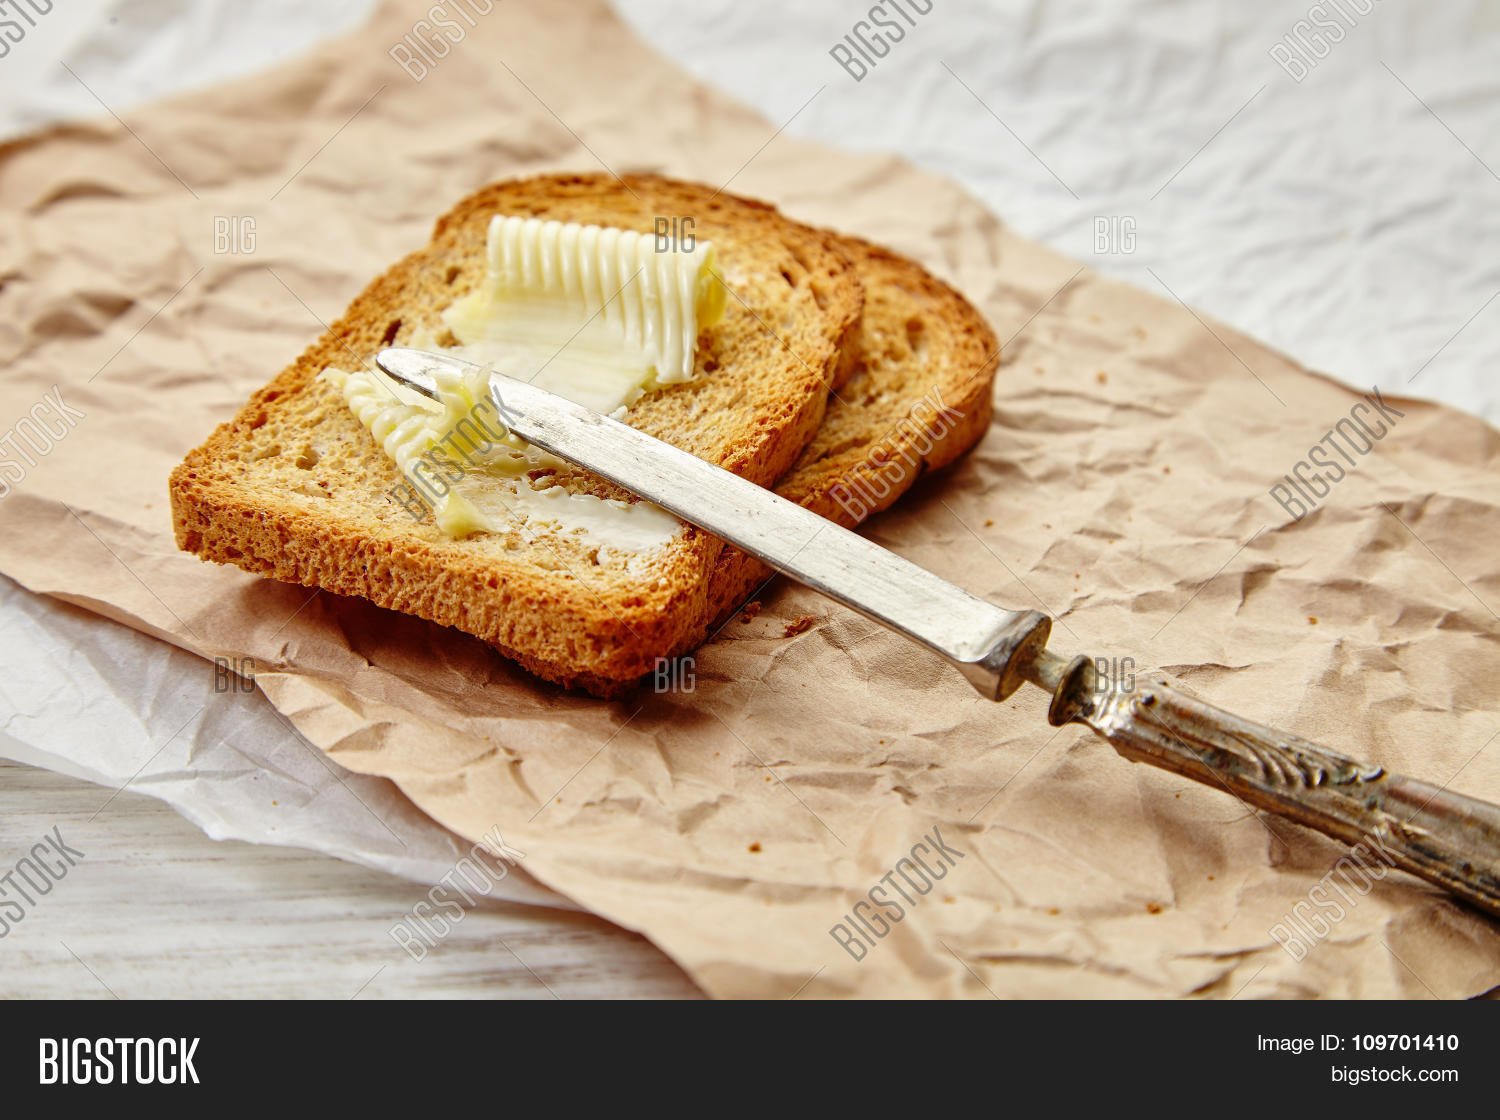 Хлеб с маслом можно есть. Бутерброд с маслом. Хлеб с маслом. Сливочное масло на хлебе. Красивый бутерброд с маслом.